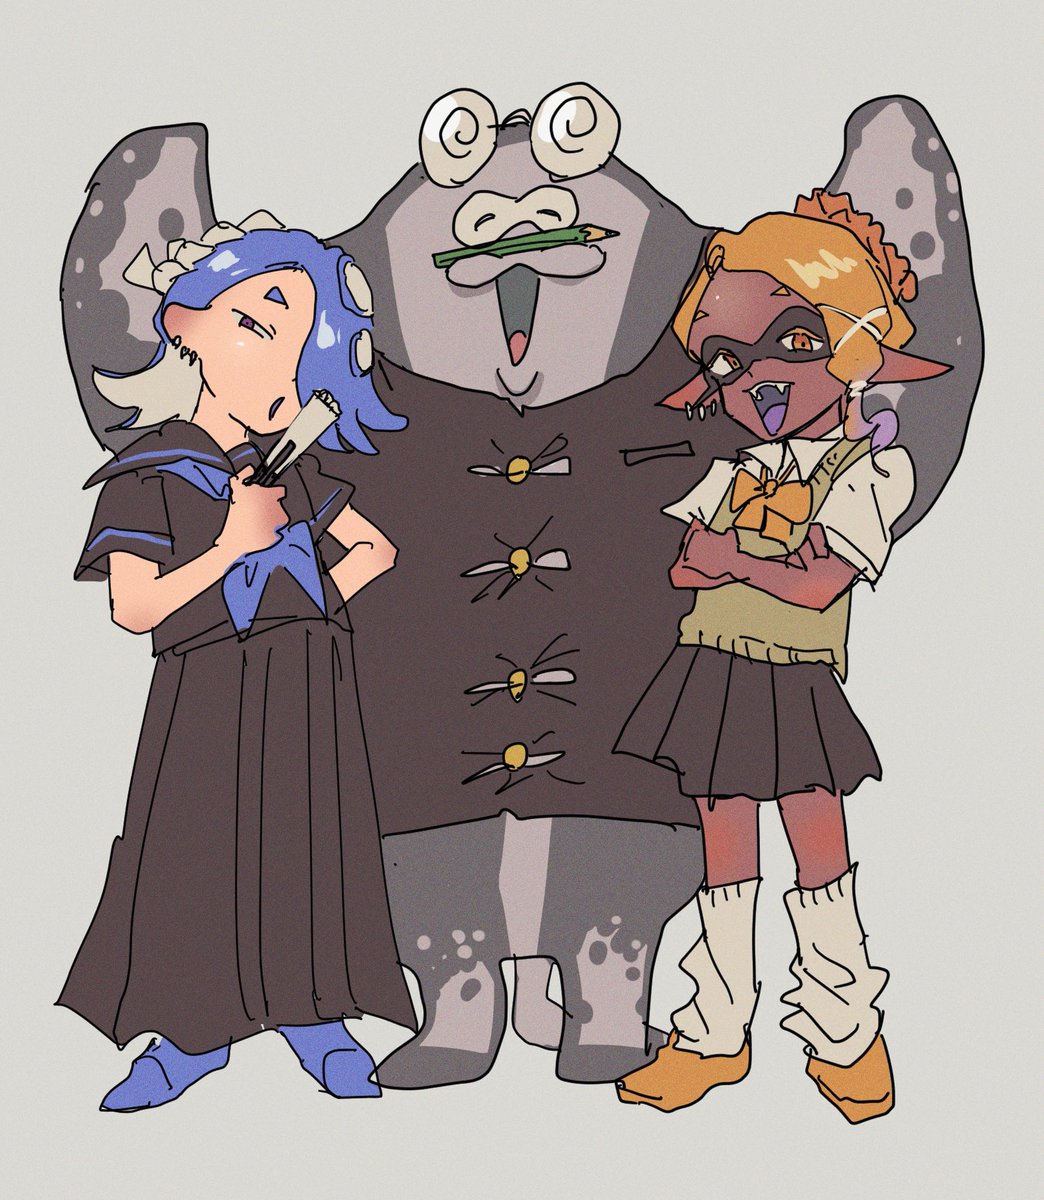 multiple girls 2girls skirt school uniform blue hair tentacle hair pleated skirt  illustration images